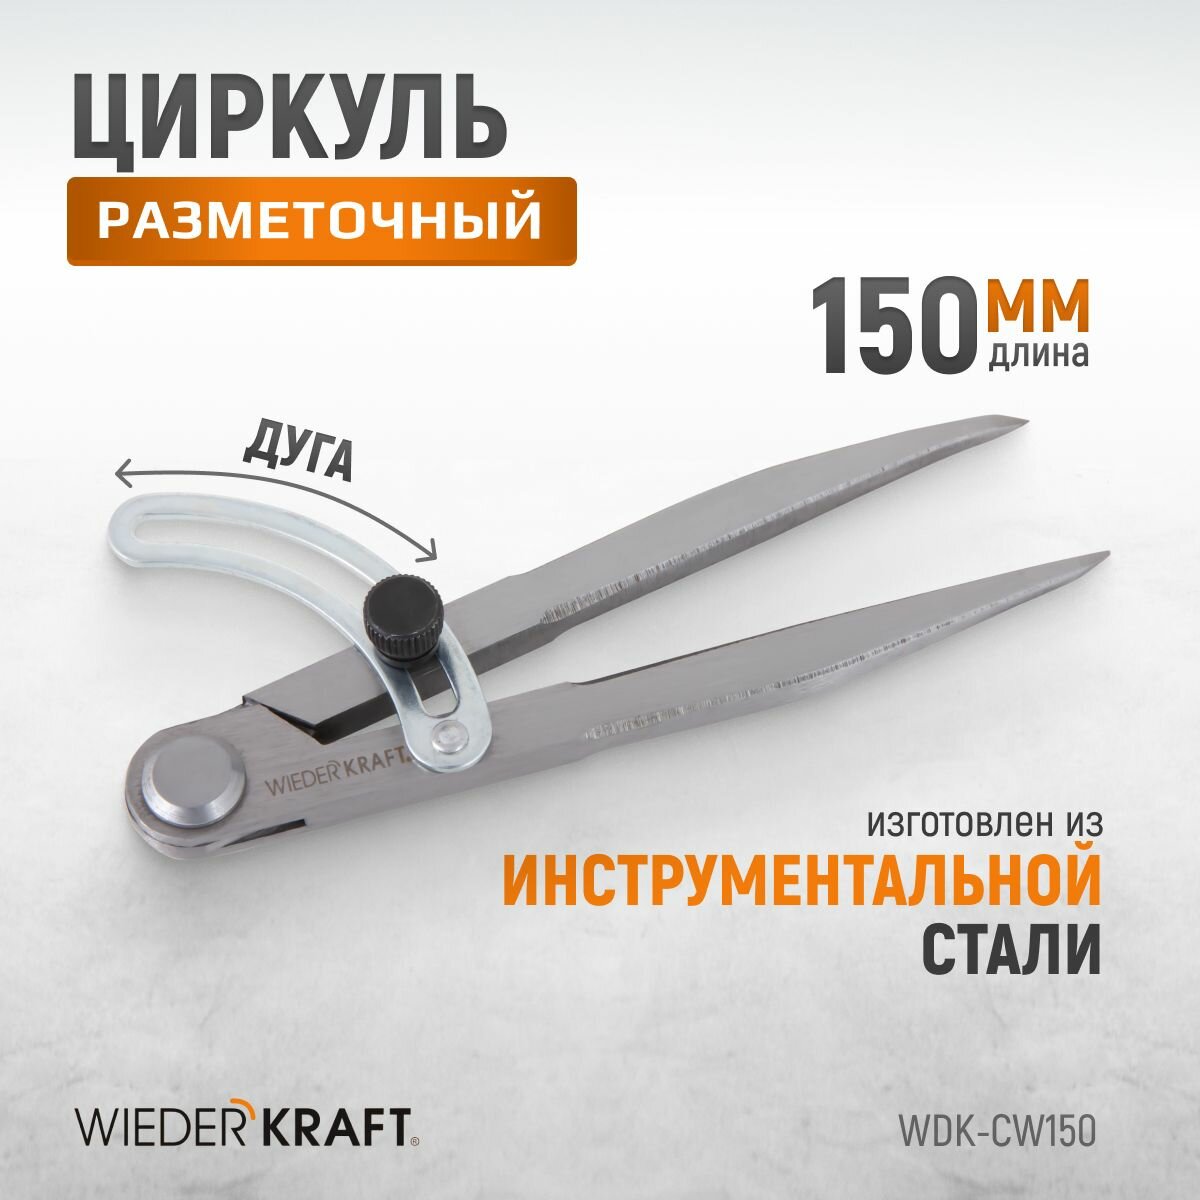 Циркуль разметочный WIEDERKRAFT 150 мм с дугой WDK-CW150